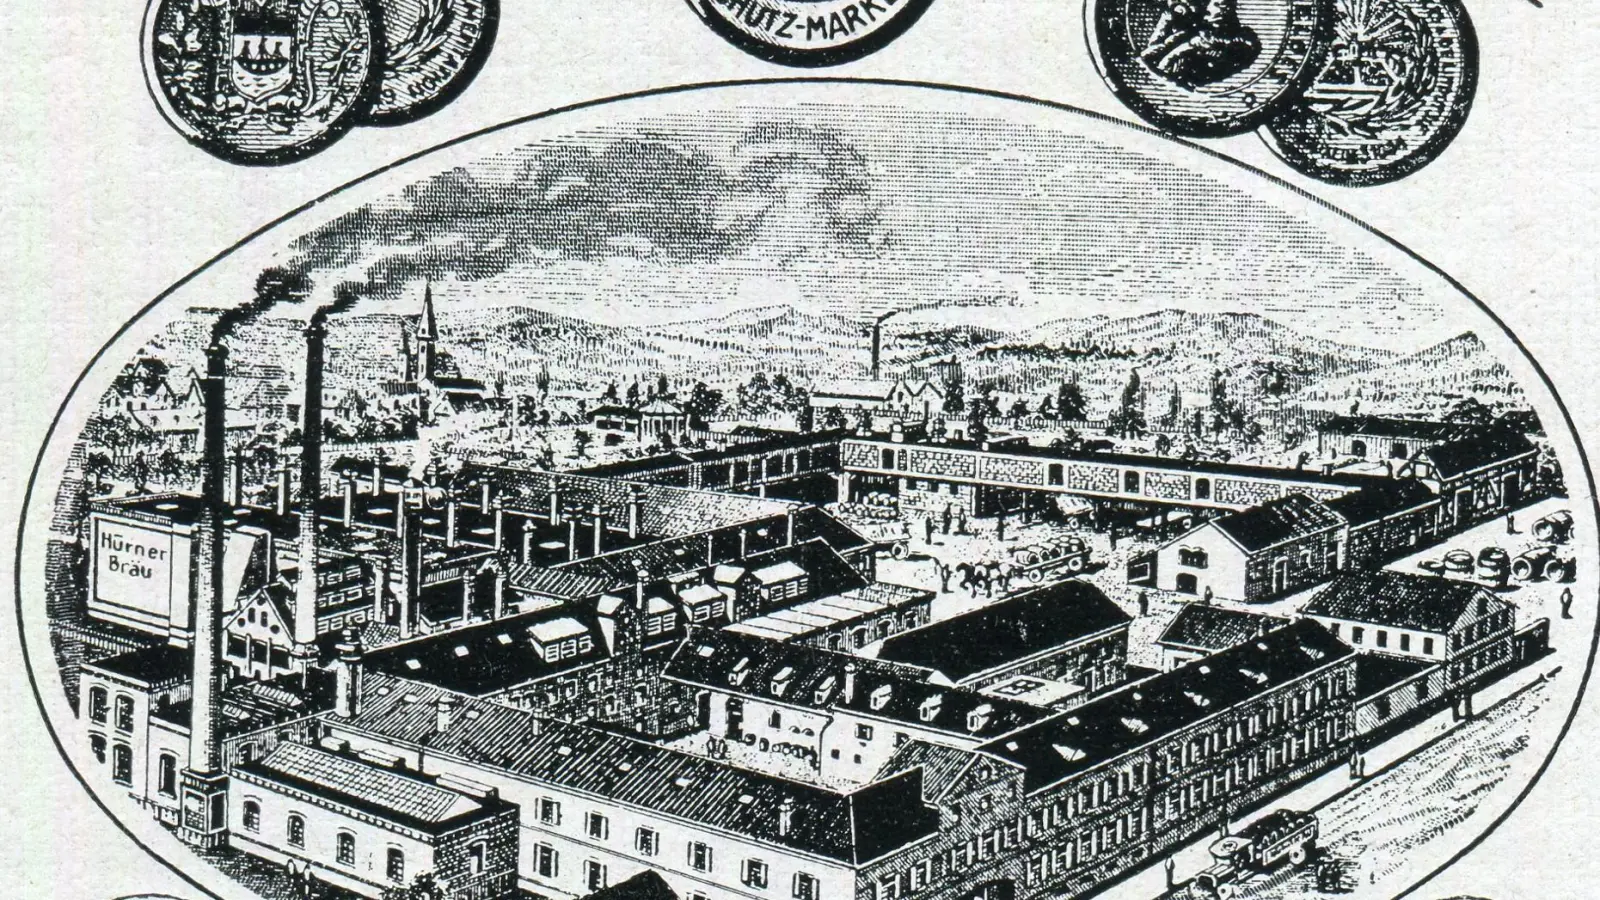 Diese Zeichnung aus einer Anzeige zeigt eine historische Ansicht der Hürner-Brauerei, damals die größte und modernste Brauerei Ansbachs. (Repro: Alexander Biernoth)